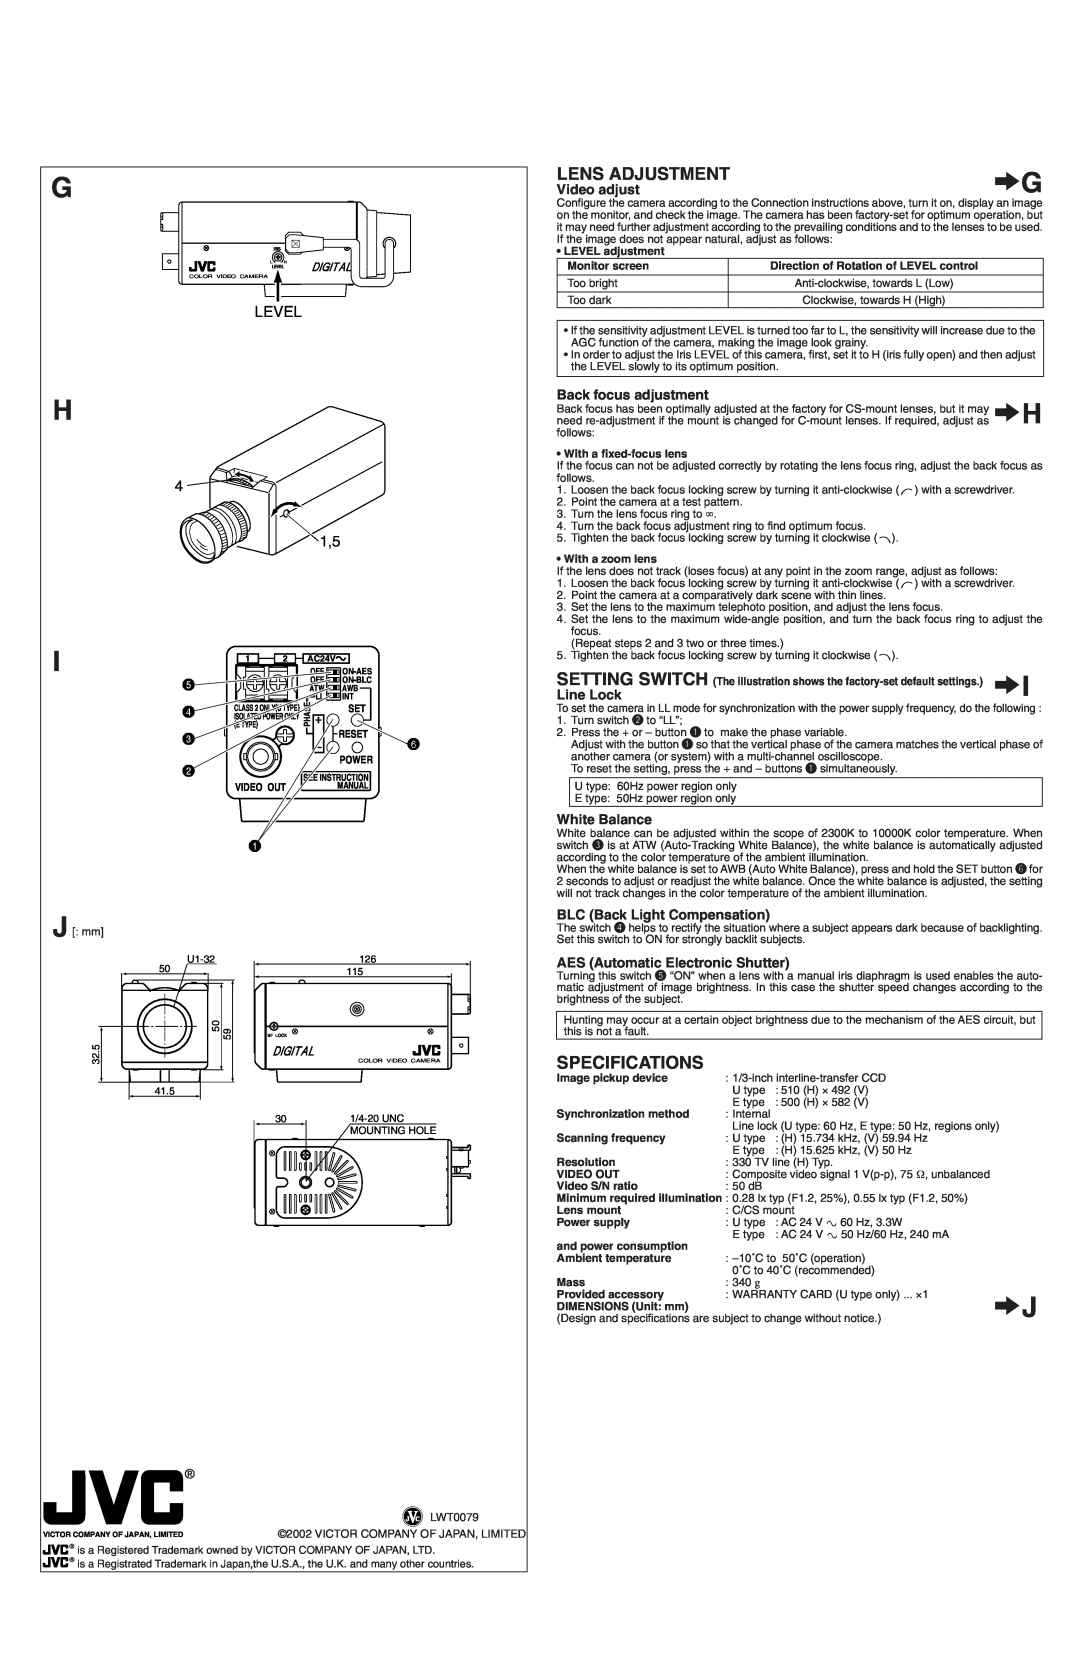 JVC TK-C750 Lens Adjustment, Specifications, Level, 5 4 3, Video adjust, Back focus adjustment, Line Lock, White Balance 